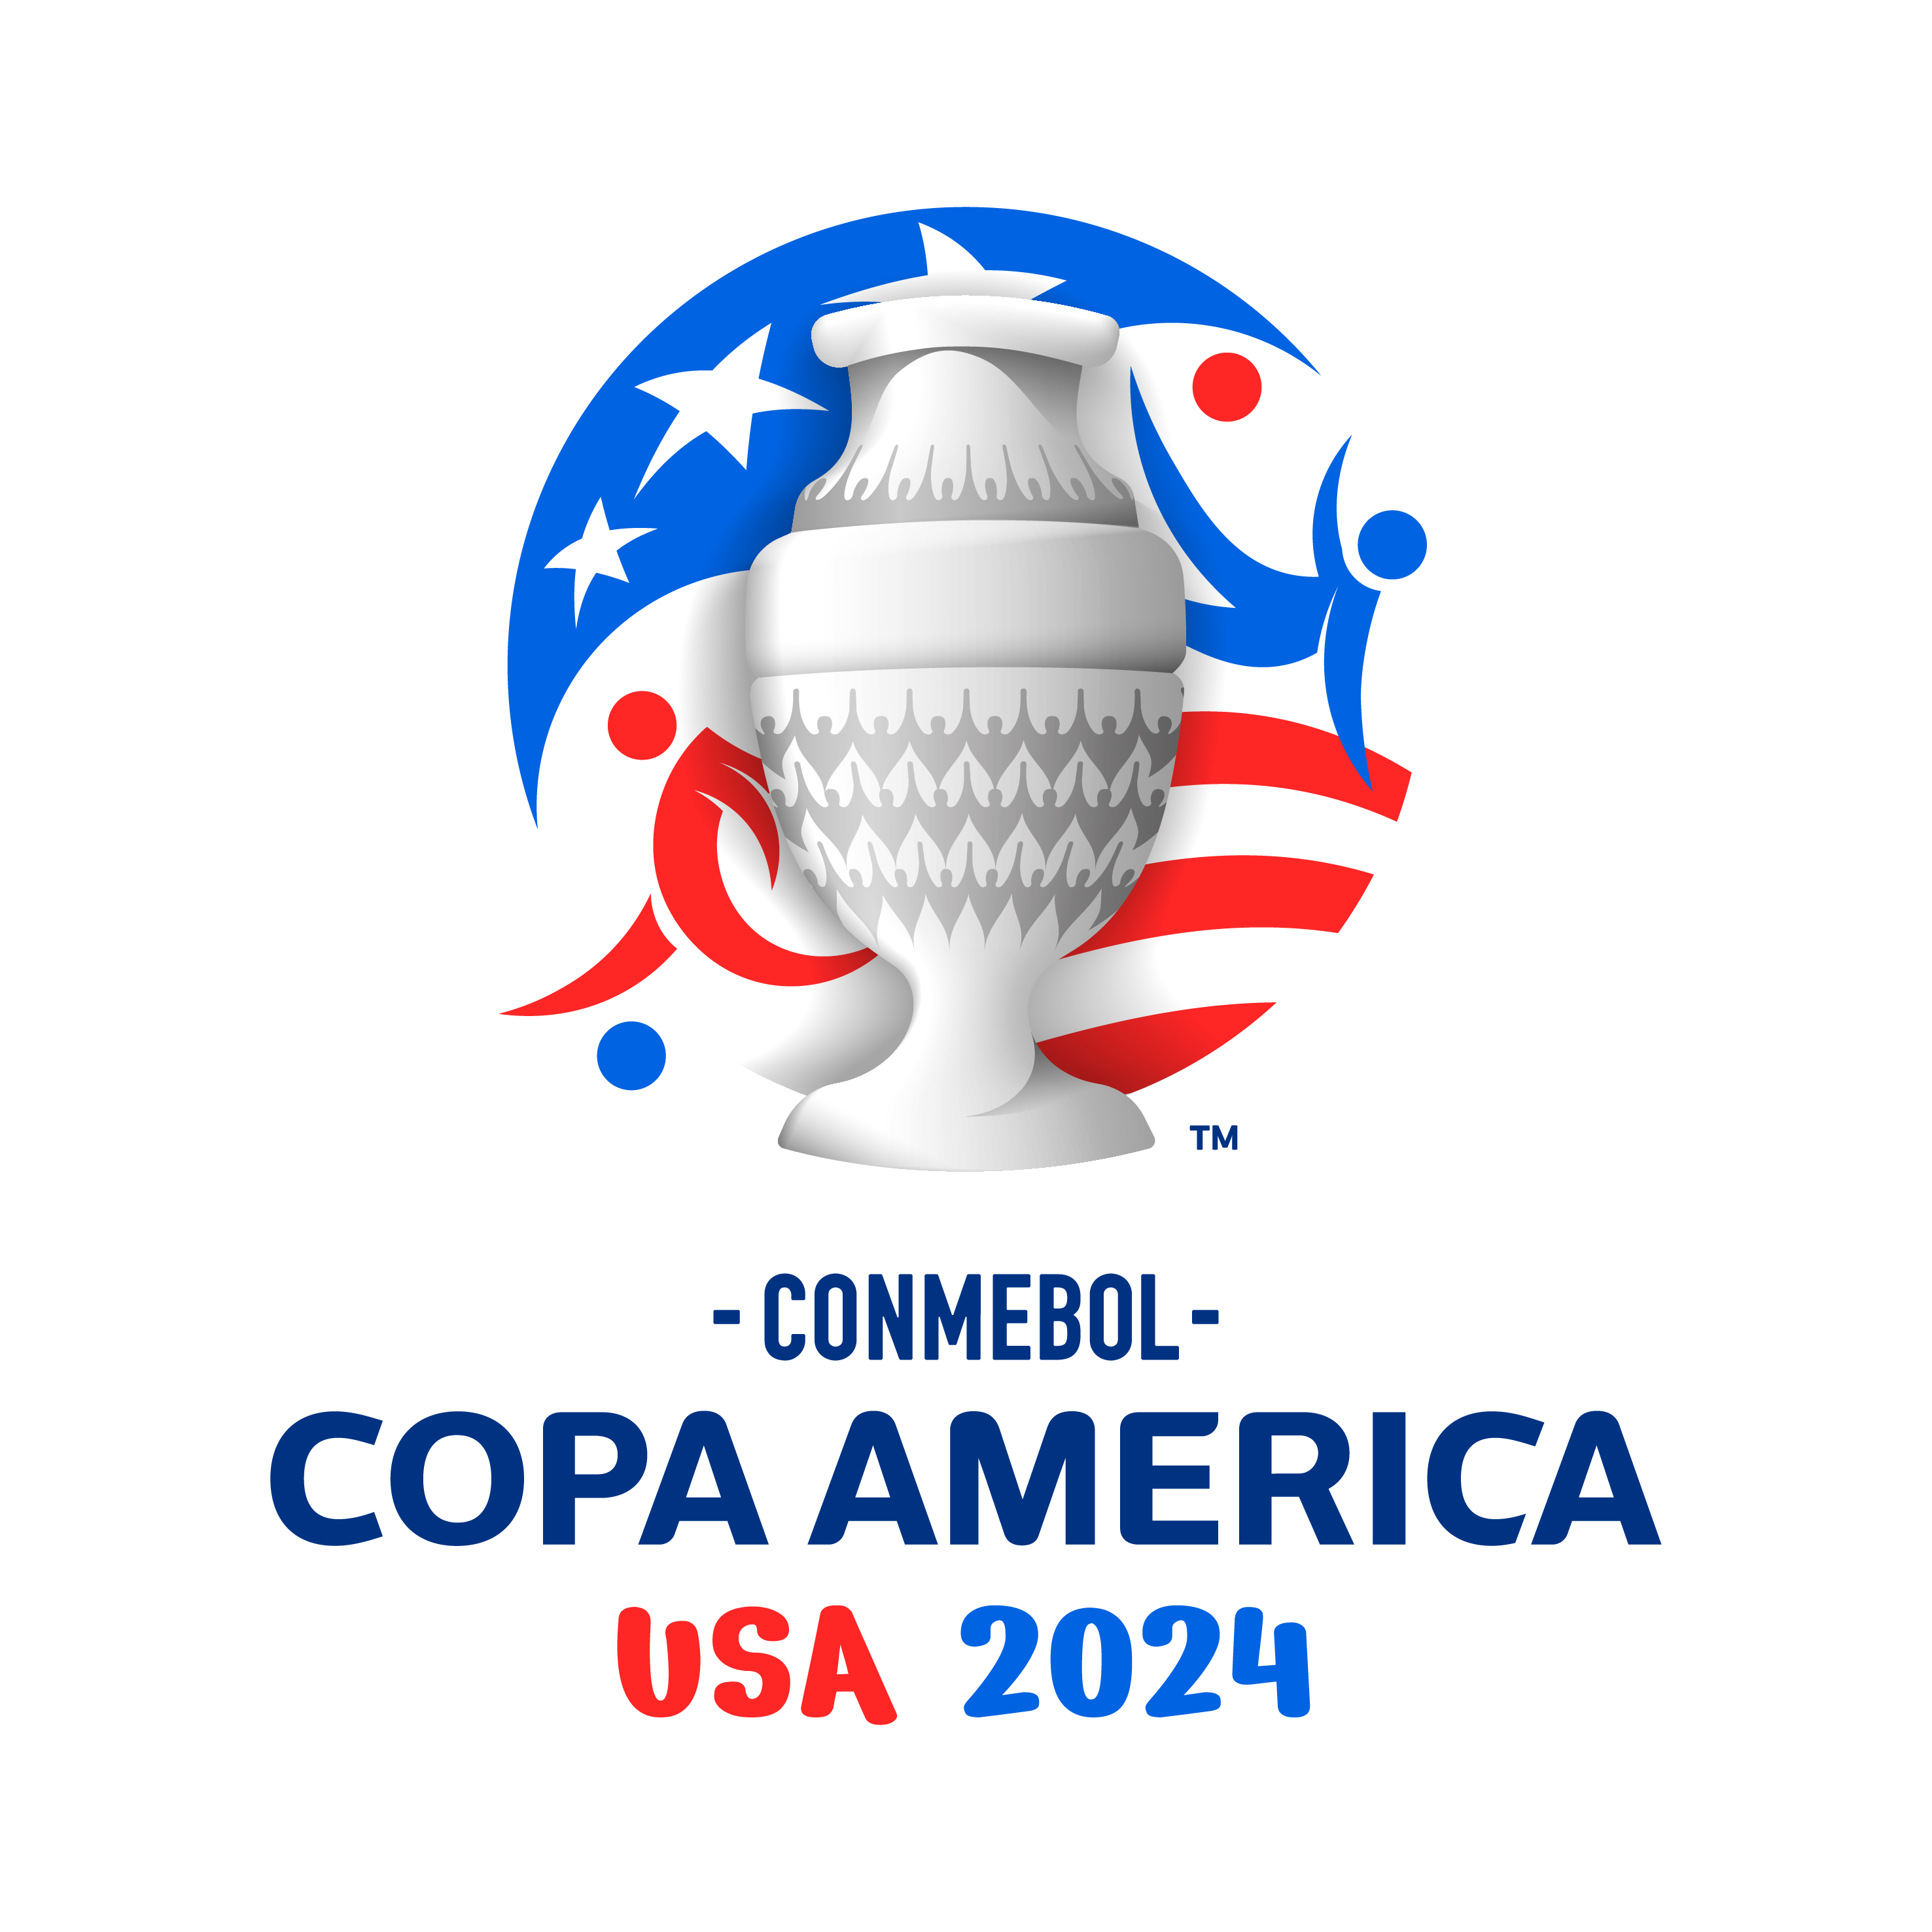 Costa Rica aspira llegar lejos en la Copa América 2024

